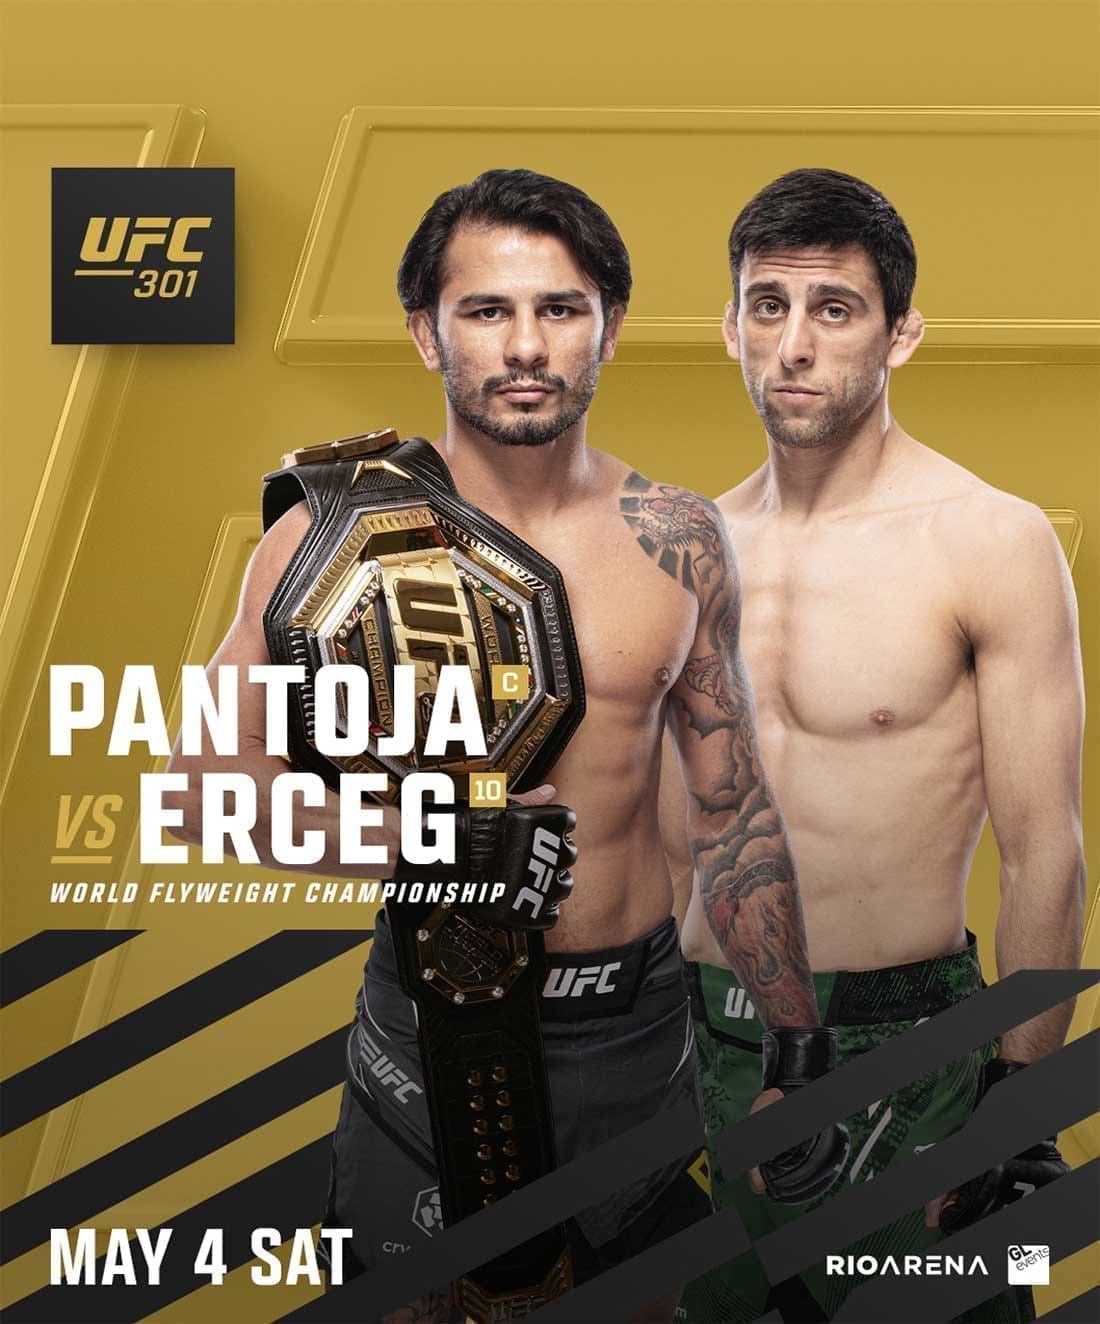 UFC 301: Пантожа - Эрцег дата проведения, кард, участники и результаты